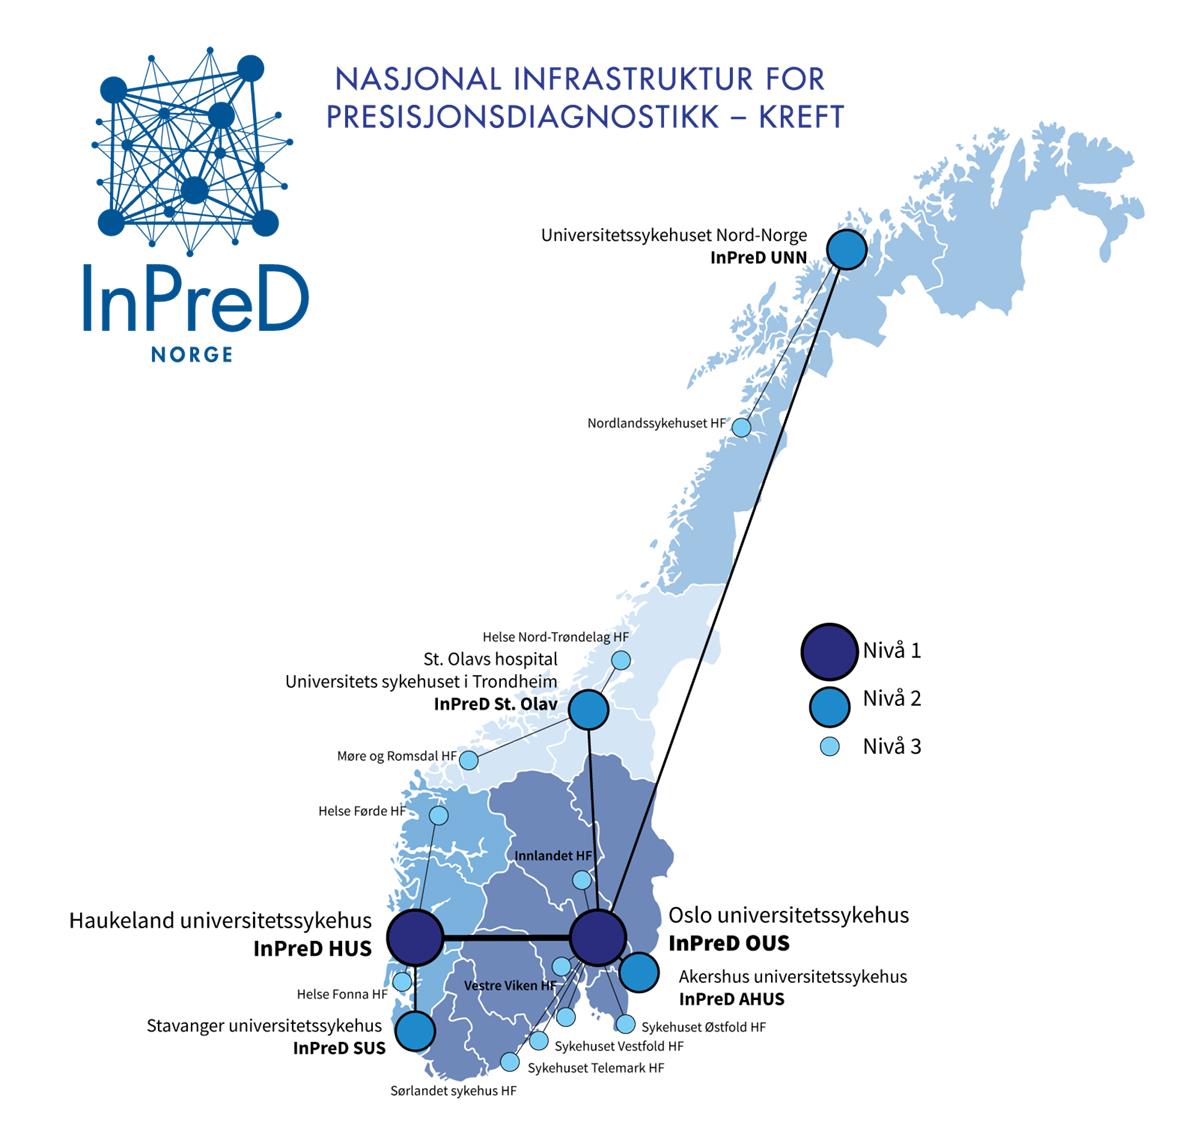 Figuren viser et kart over Norge der de ulike institusjonene som deltar i InPreD er plassert som sirkler, der hver sirkel kan ha tre størrelser; stor sirkel nivå 1, mellomstor sirkel nivå 2, liten sirkel nivå 3, som indikator på hvilket nivå institusjonen har i InPreD.